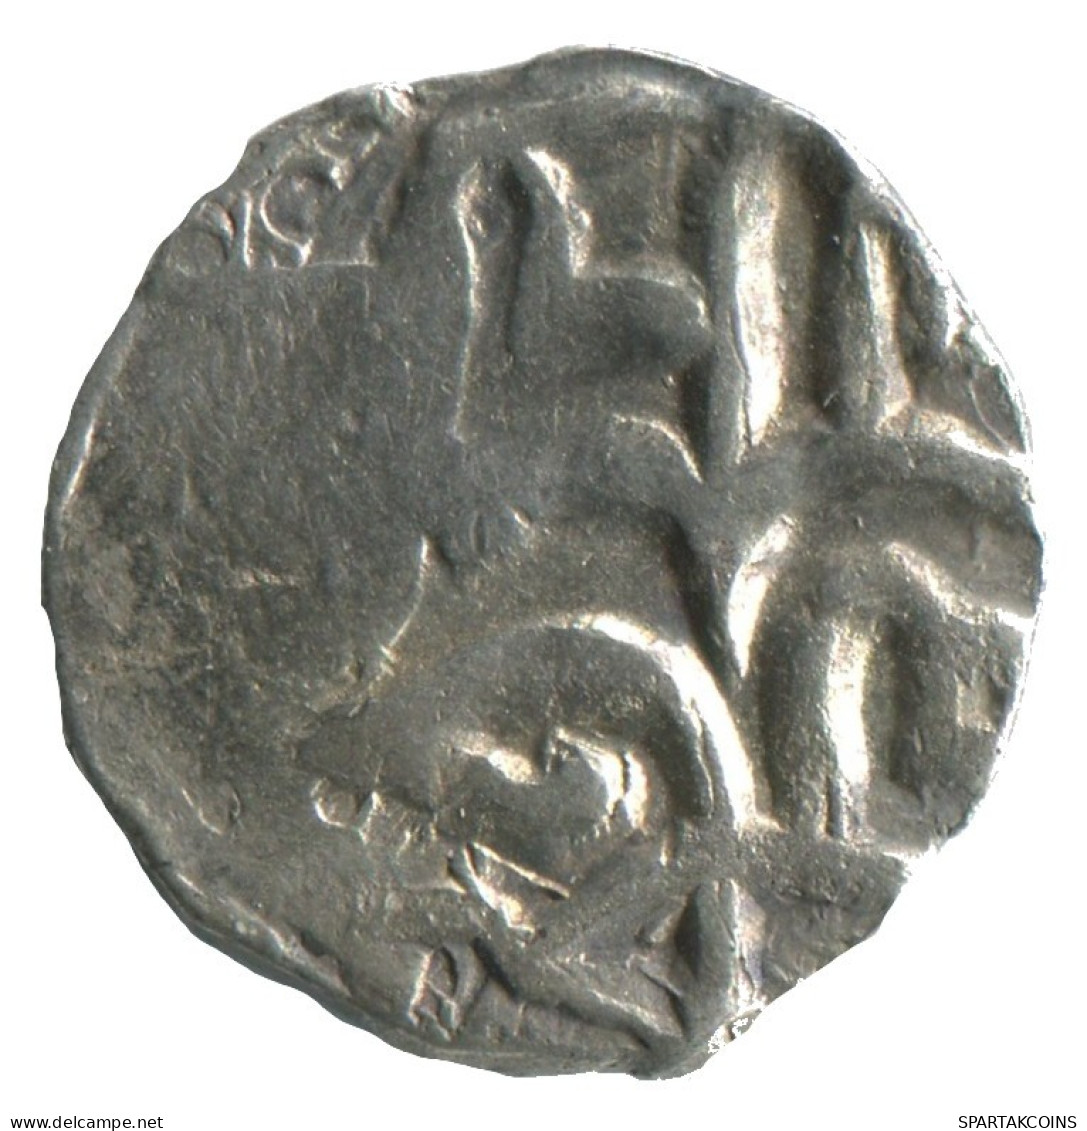 GOLDEN HORDE Silver Dirham Medieval Islamic Coin 1.3g/16mm #NNN2017.8.D.A - Islamische Münzen